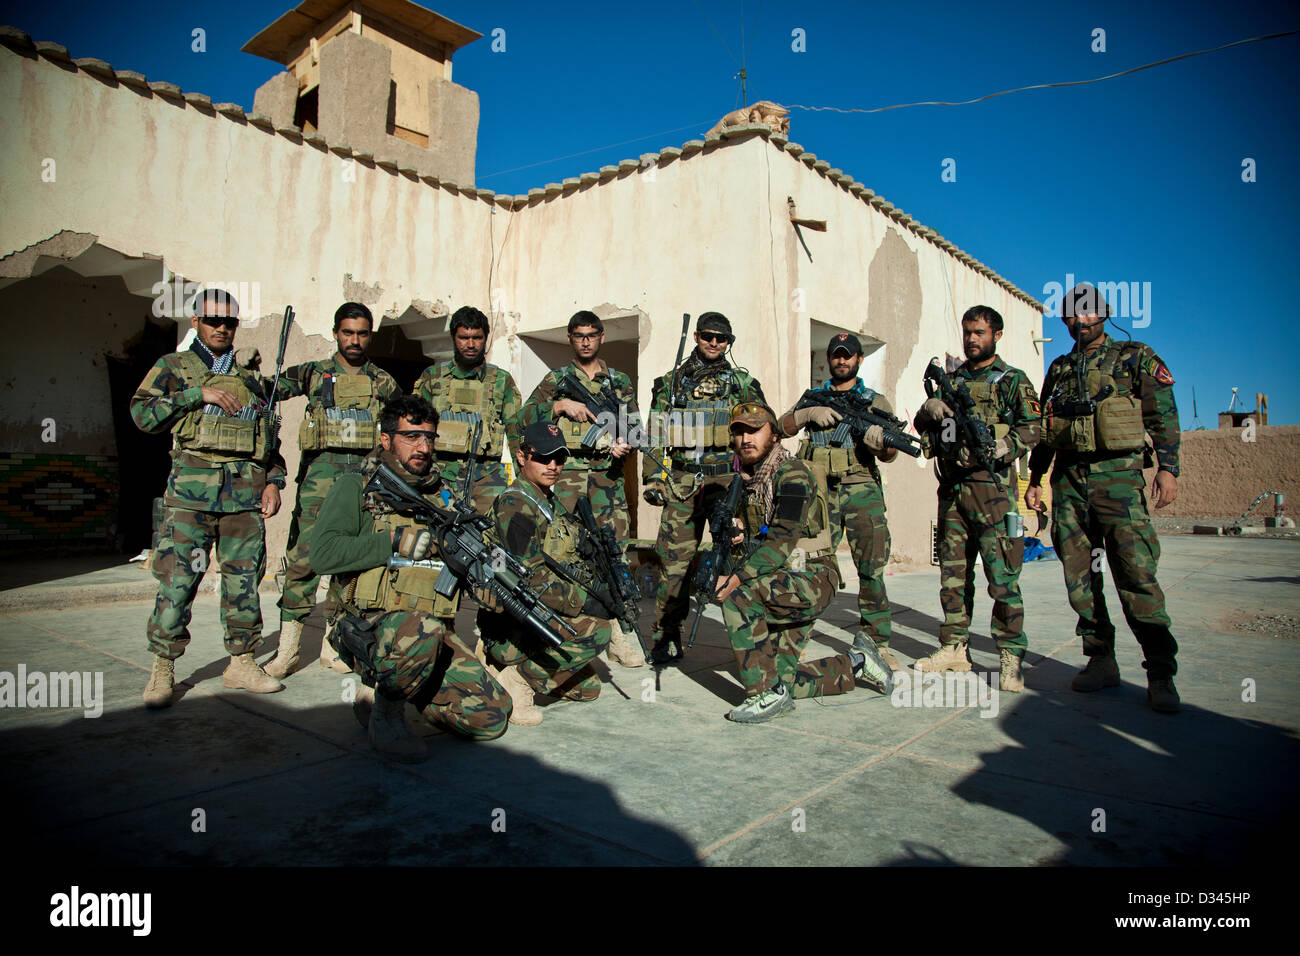 Provinz Herat, Afghanistan. 8. Februar 2013. Afghan National Army Special Forces Soldaten posieren für ein Gruppenfoto vor einem Mission 8. Februar 2013 in der Provinz Herat, Afghanistan. Stockfoto